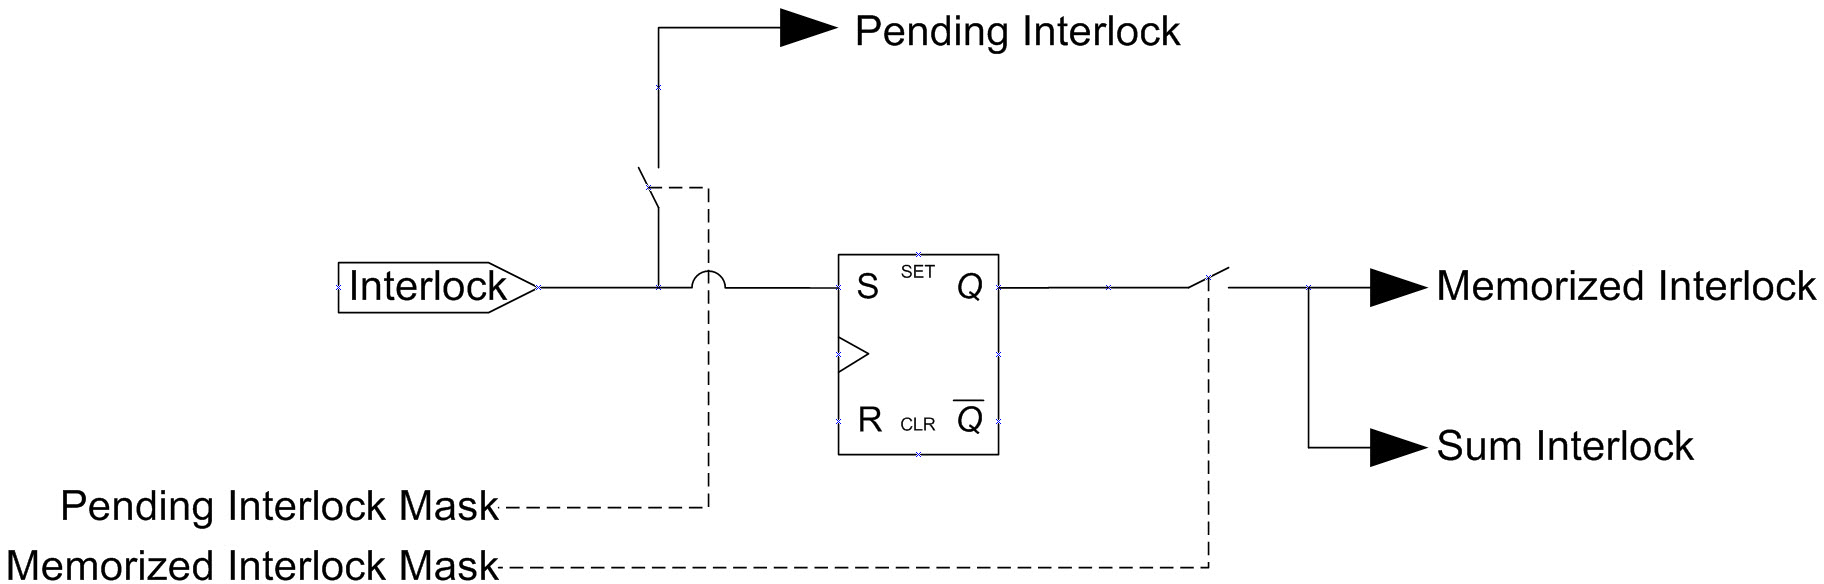 Interlockfunktion.jpg